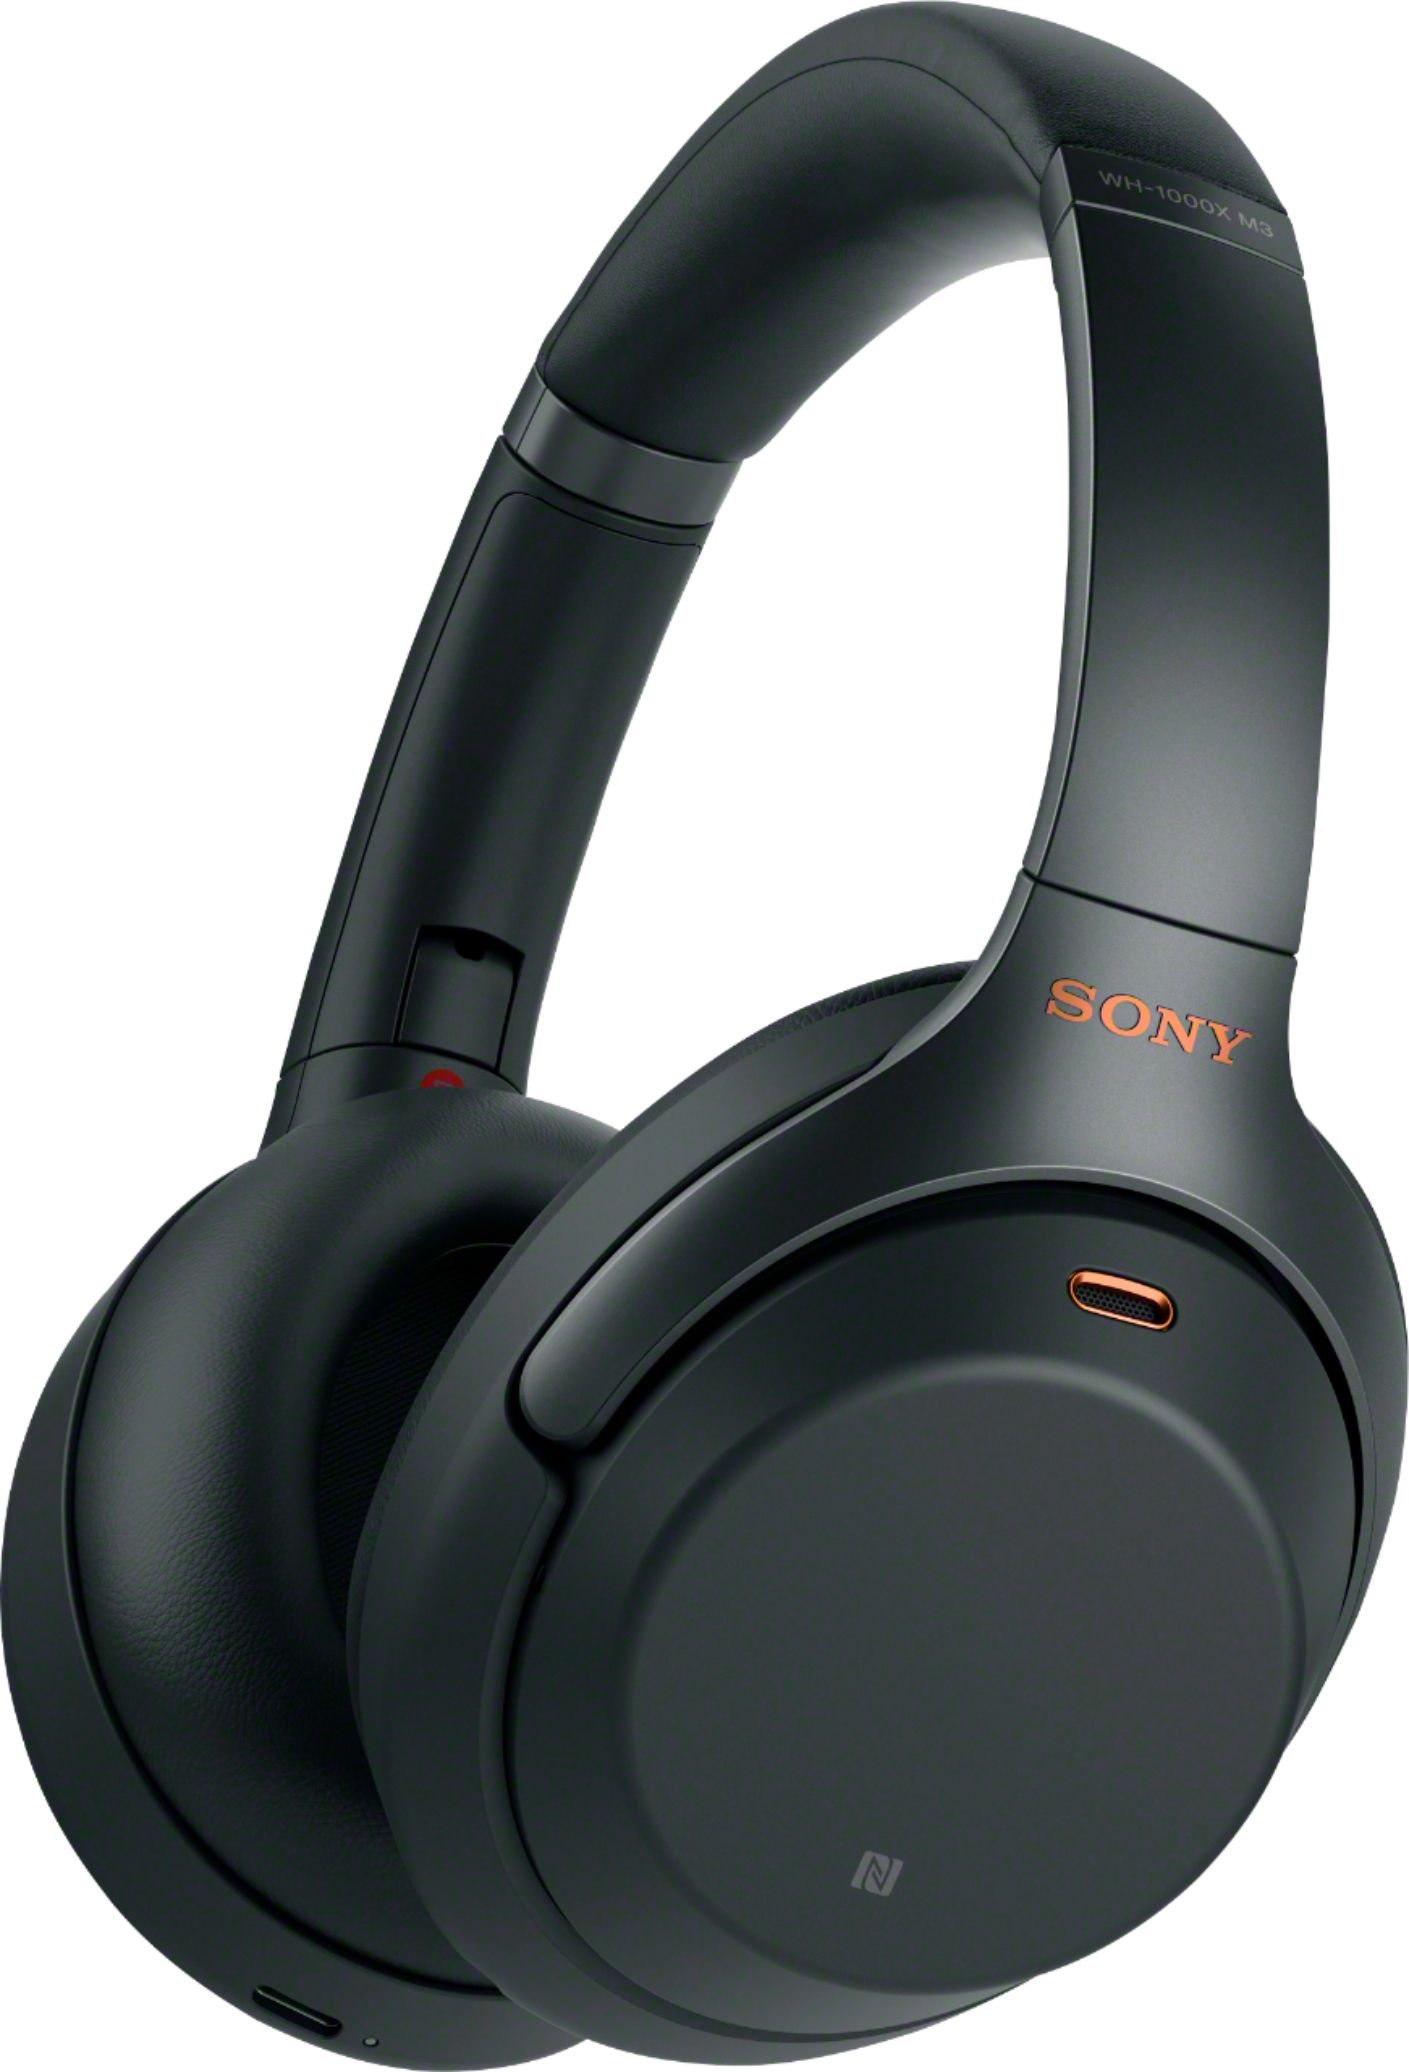 Explore the Sony Headphones Collection